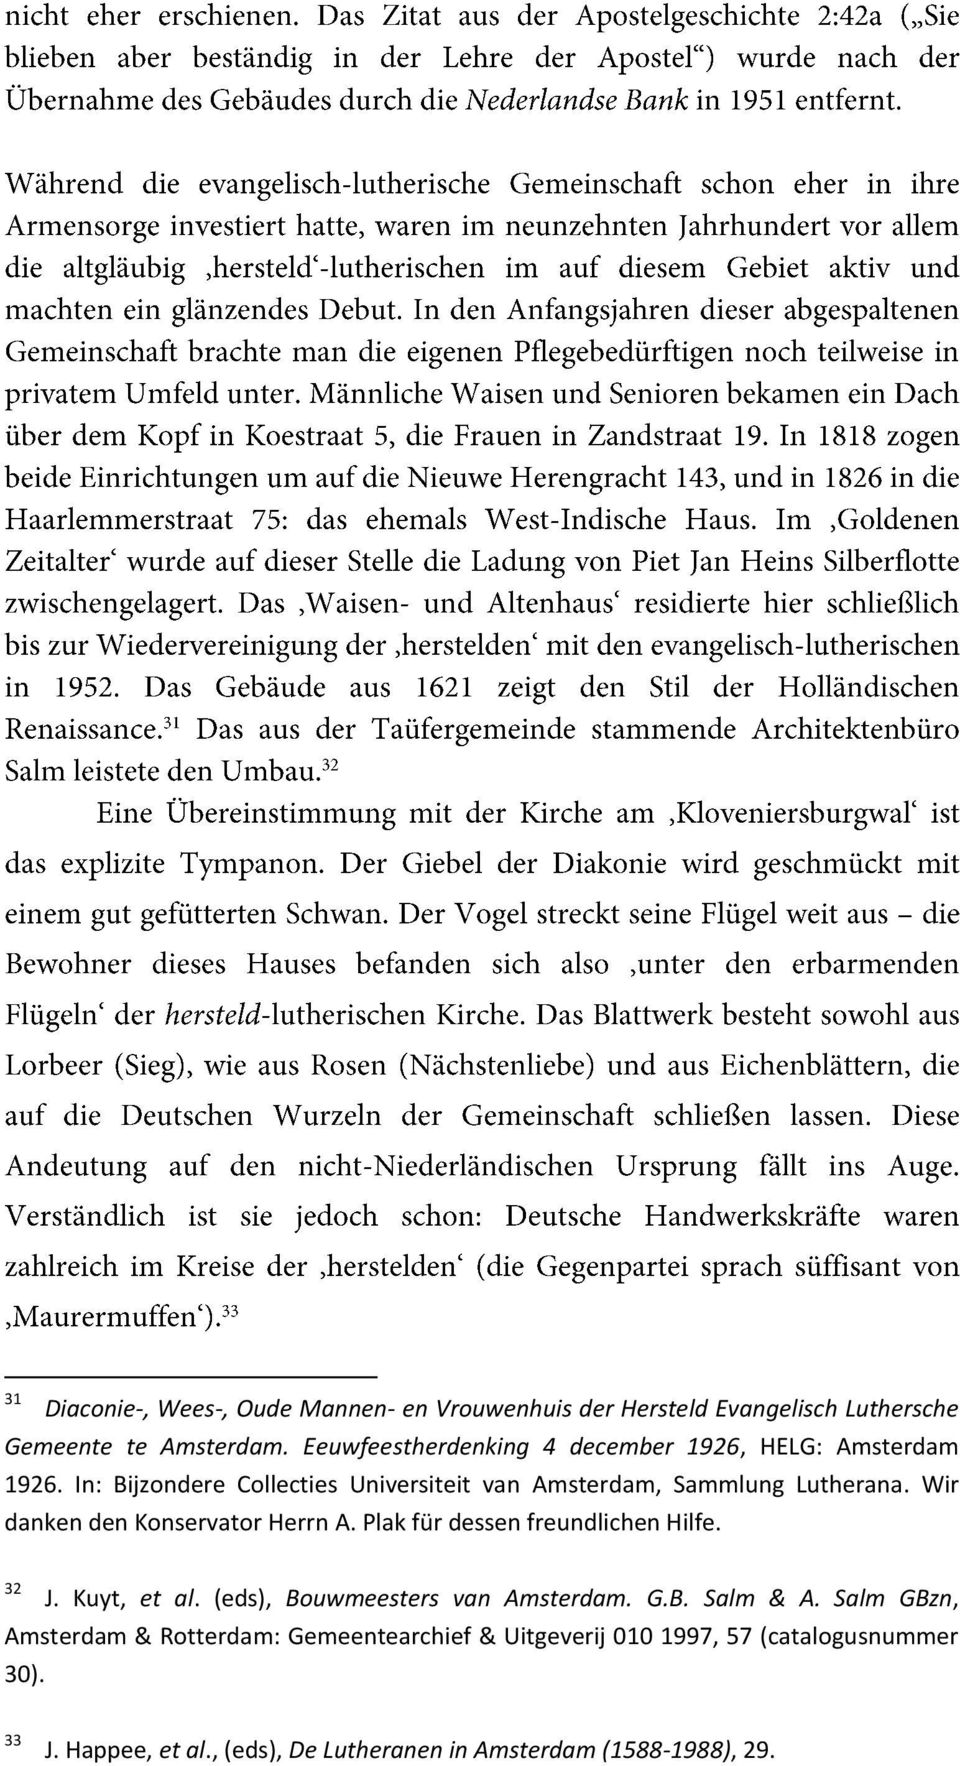 Wir danken den Konservator Herrn A. Plak für dessen freundlichen Hilfe. 32 J. Kuyt, et al. (eds), Bouwmeesters van Amsterdam. G.B. Salm & A.